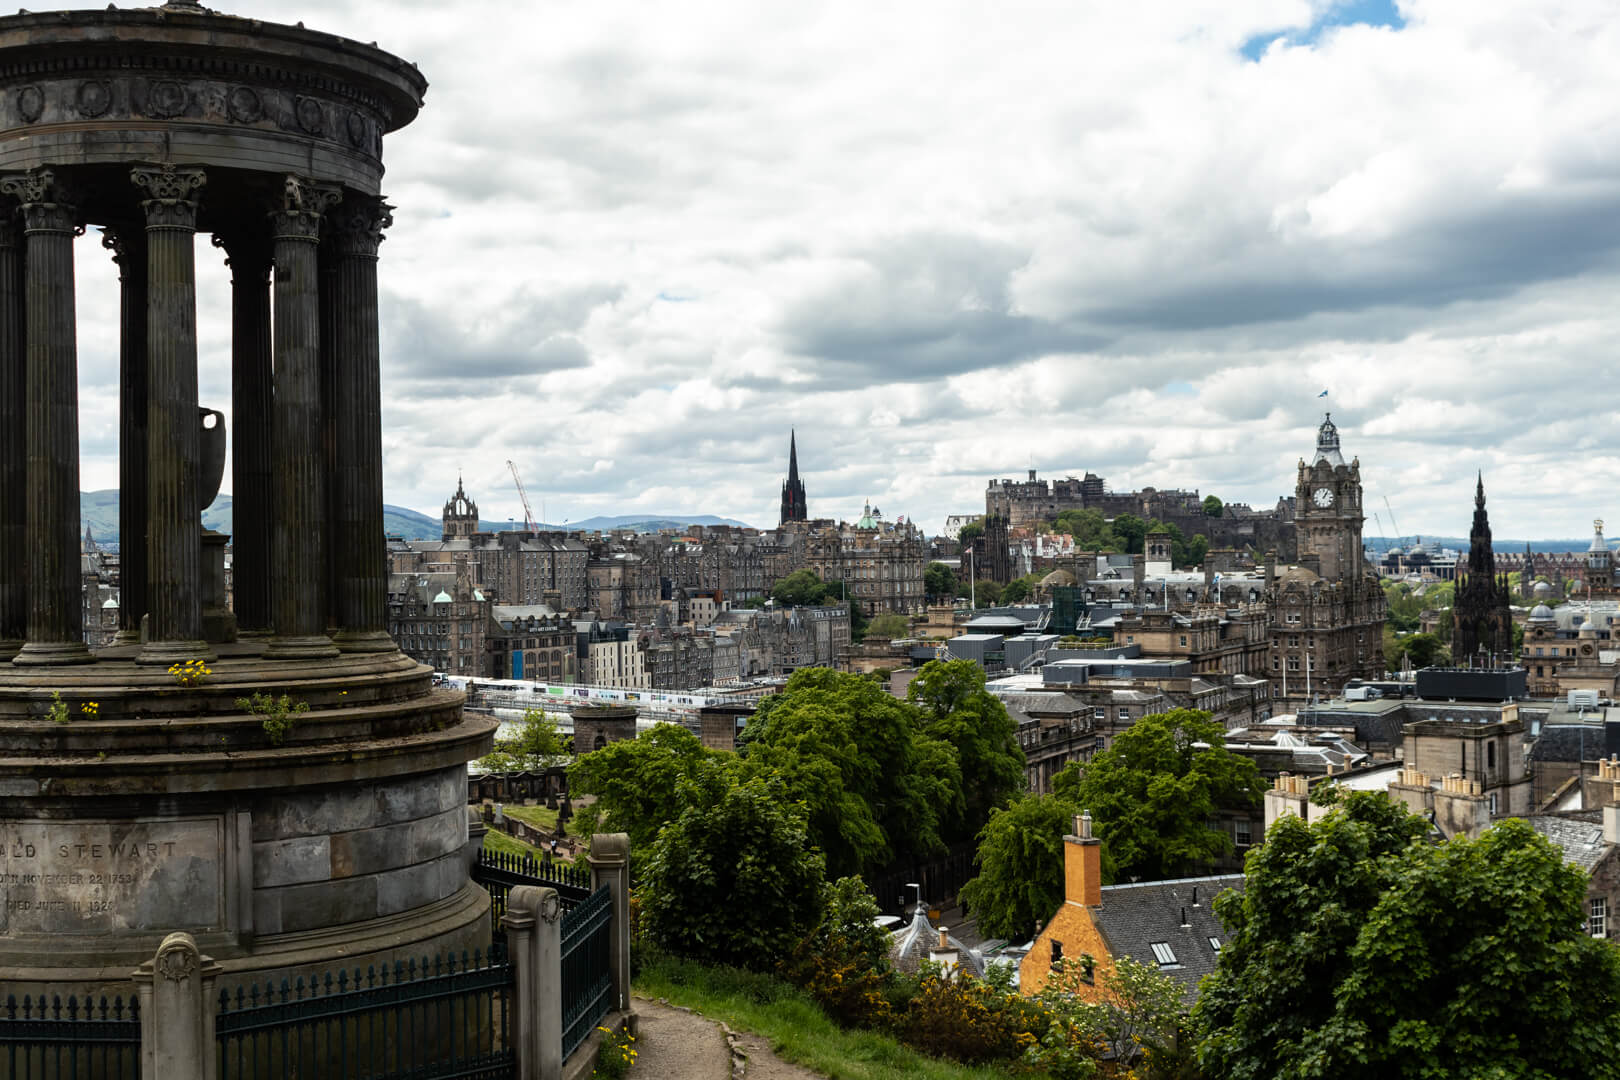 Calton Hill viewpoint in Edinburgh